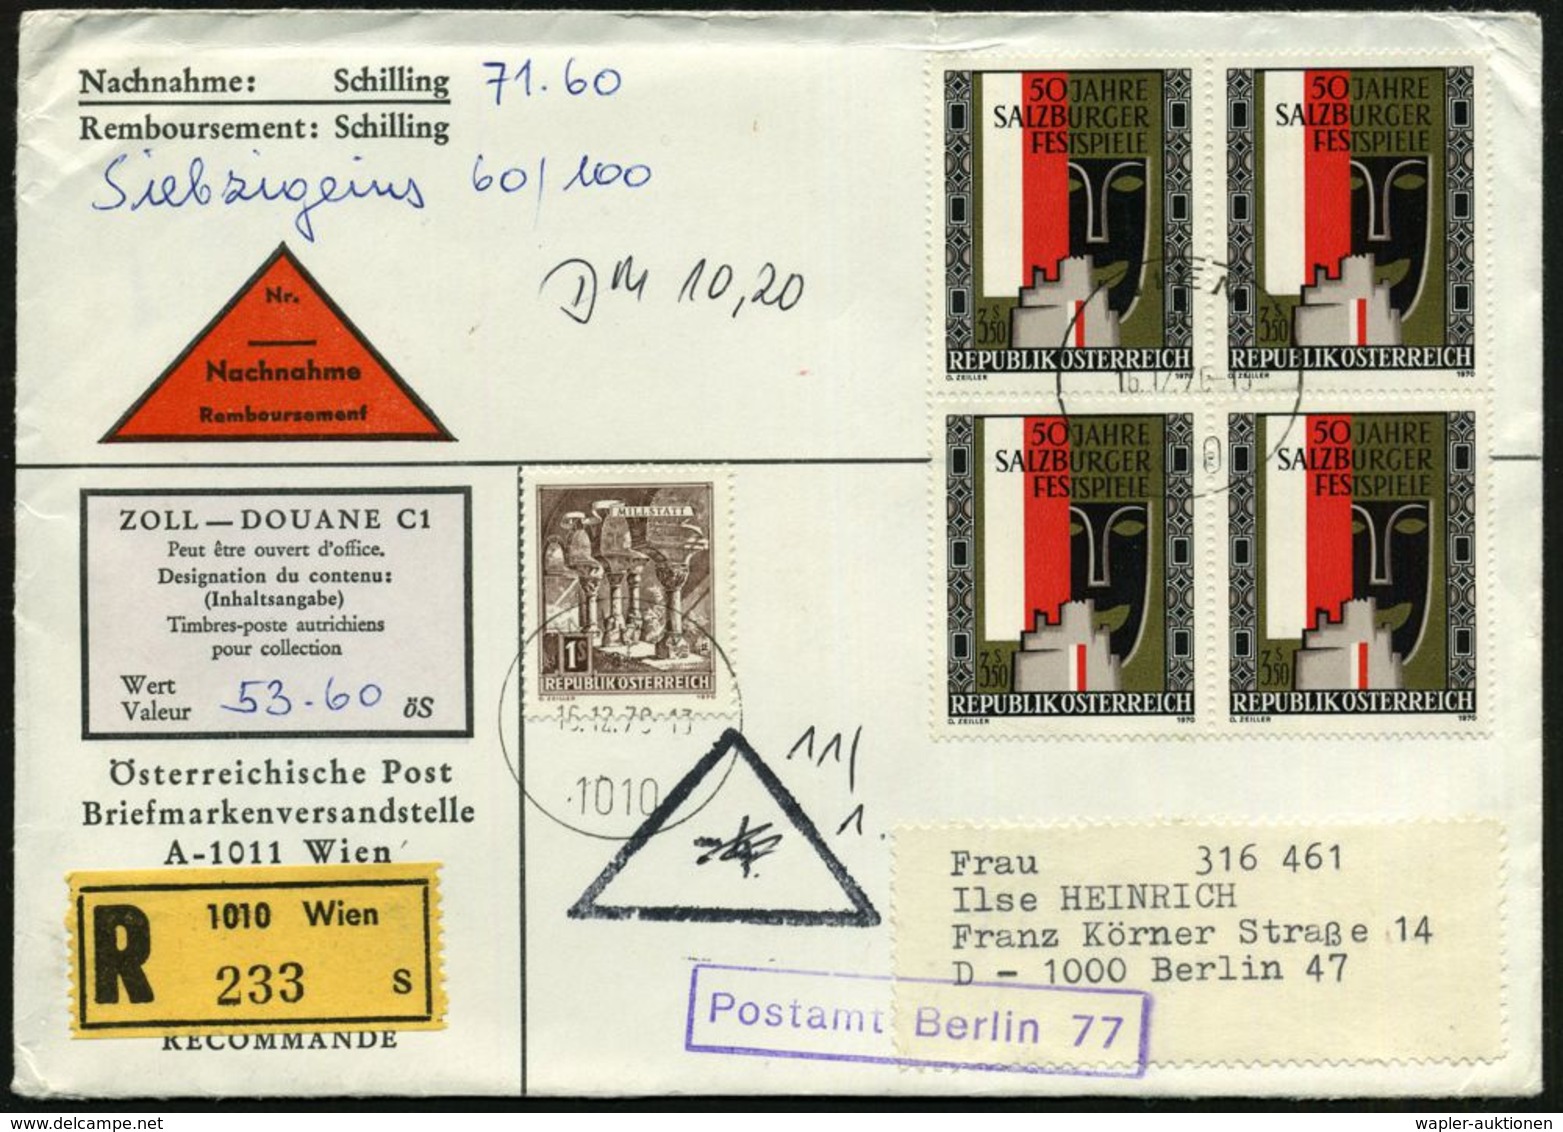 ÖSTERREICH 1960 (16.12.) 3,50 S. "50 Jahre Salzburger Festspiele", 4er-Block U.a. + RZ: 1010 Wien / S = Sammlerservice,  - Music